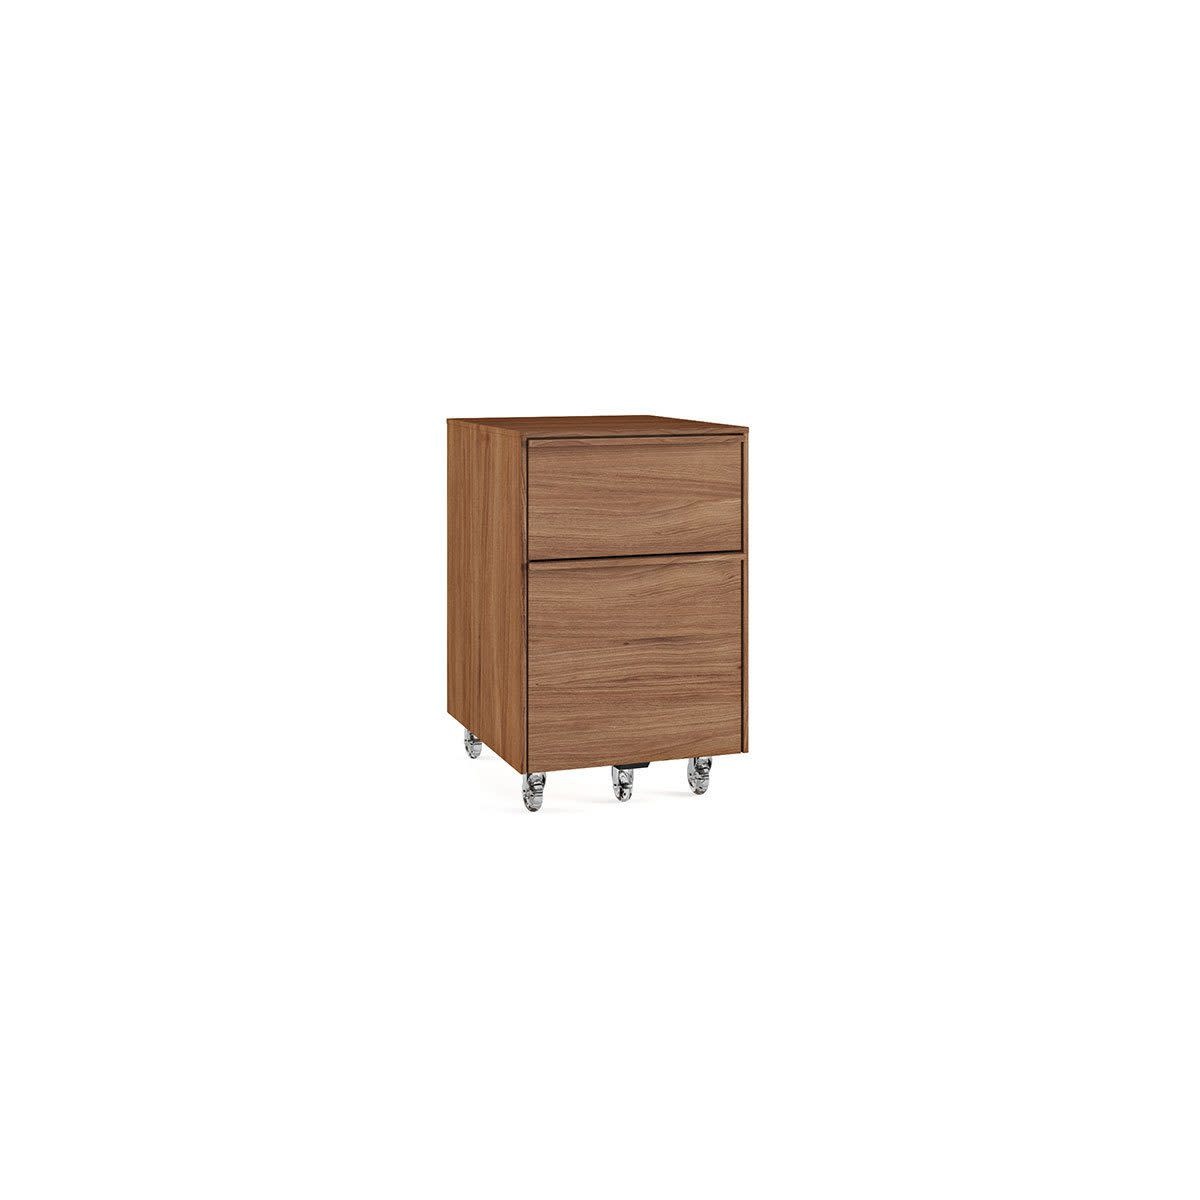 BDI Cascadia 6207, Two-drawer mobile file pedestal